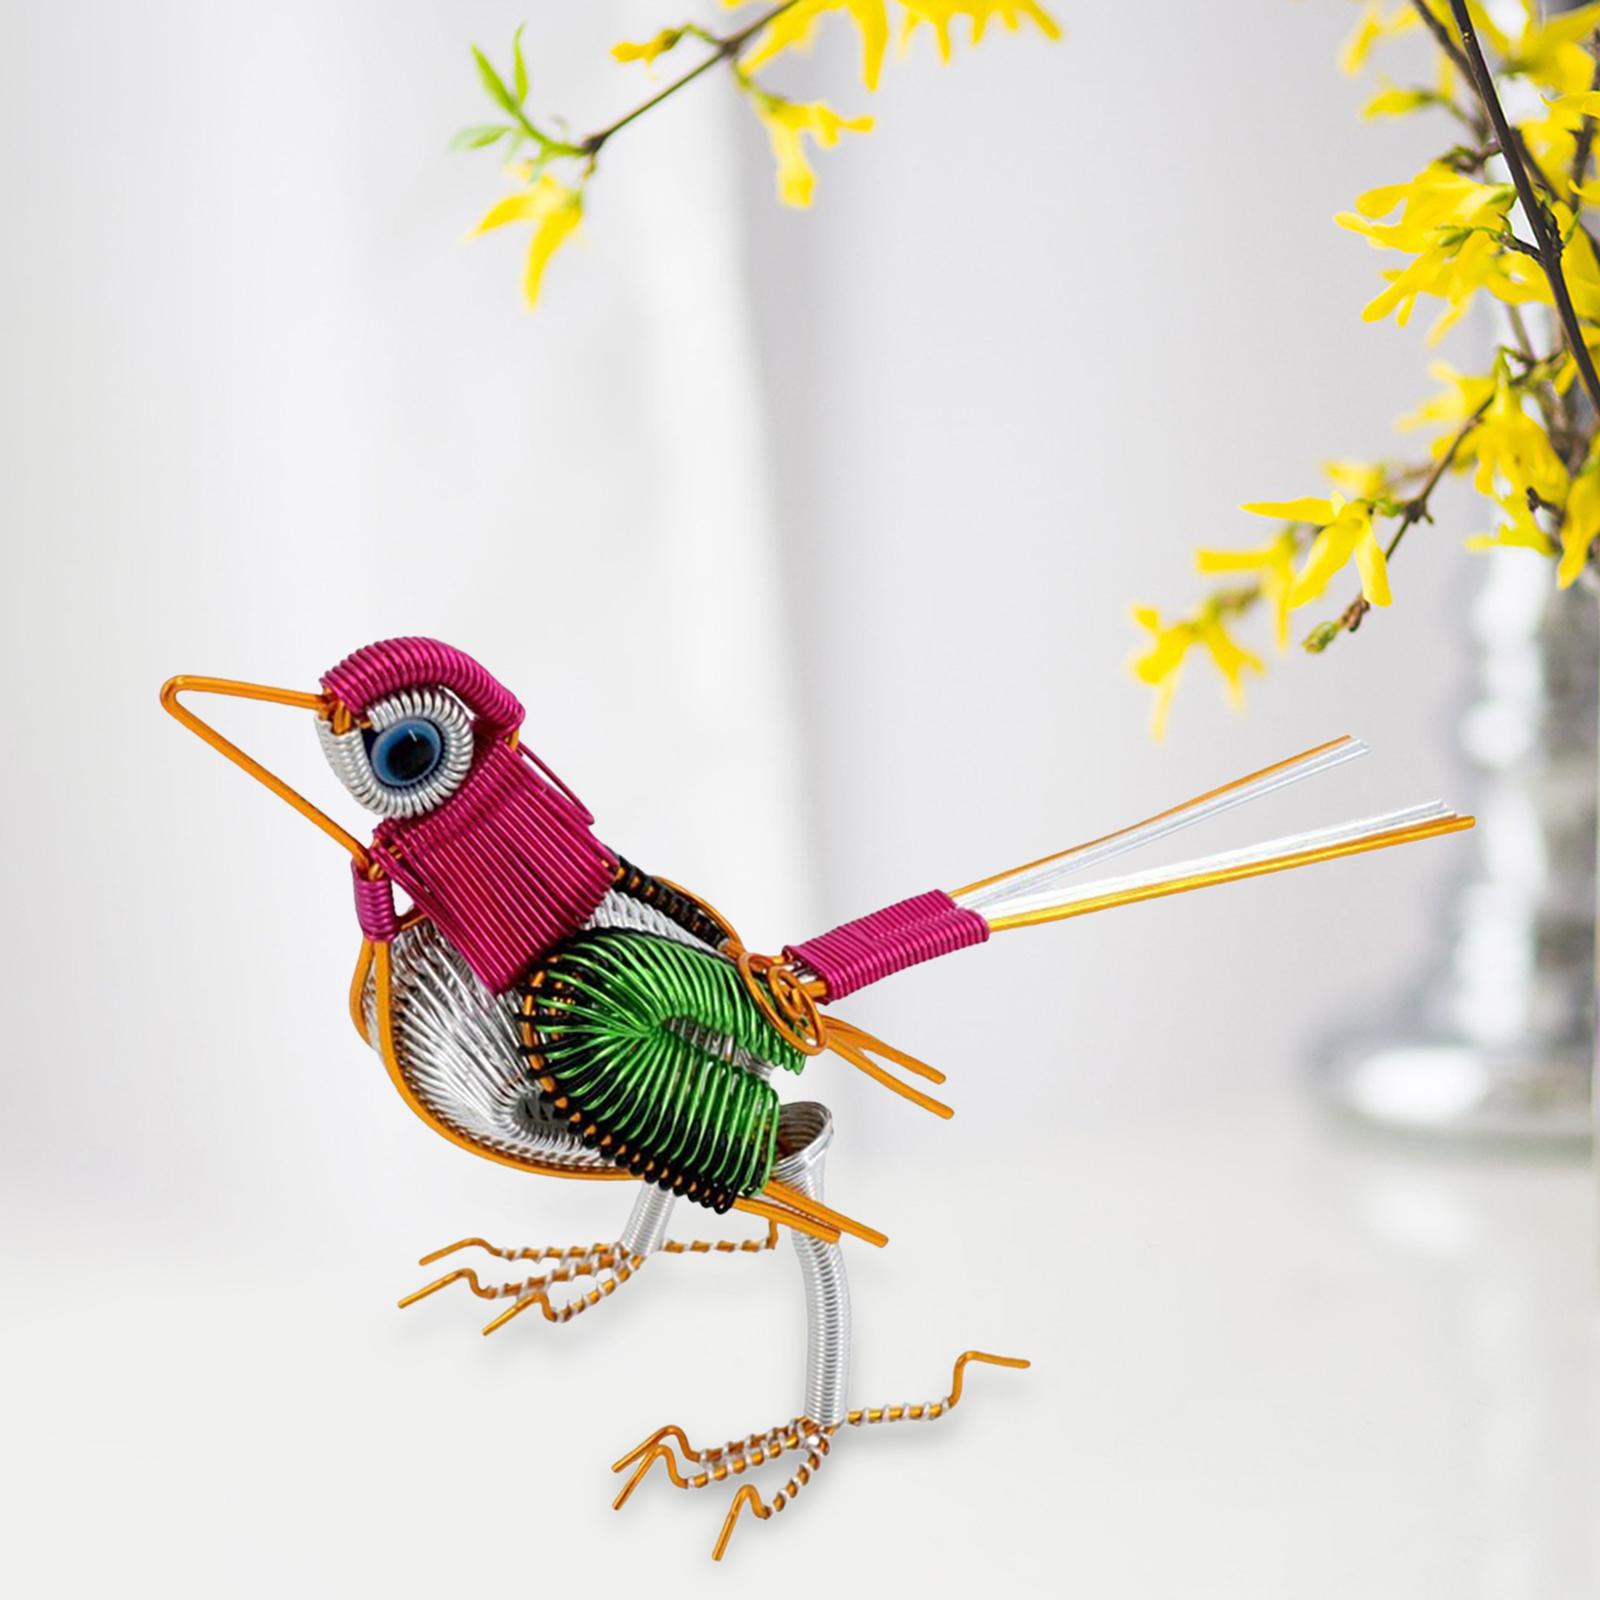 Metal Bird Statue Ornament Handcrafted Sculptures for Desktop Bedroom Office